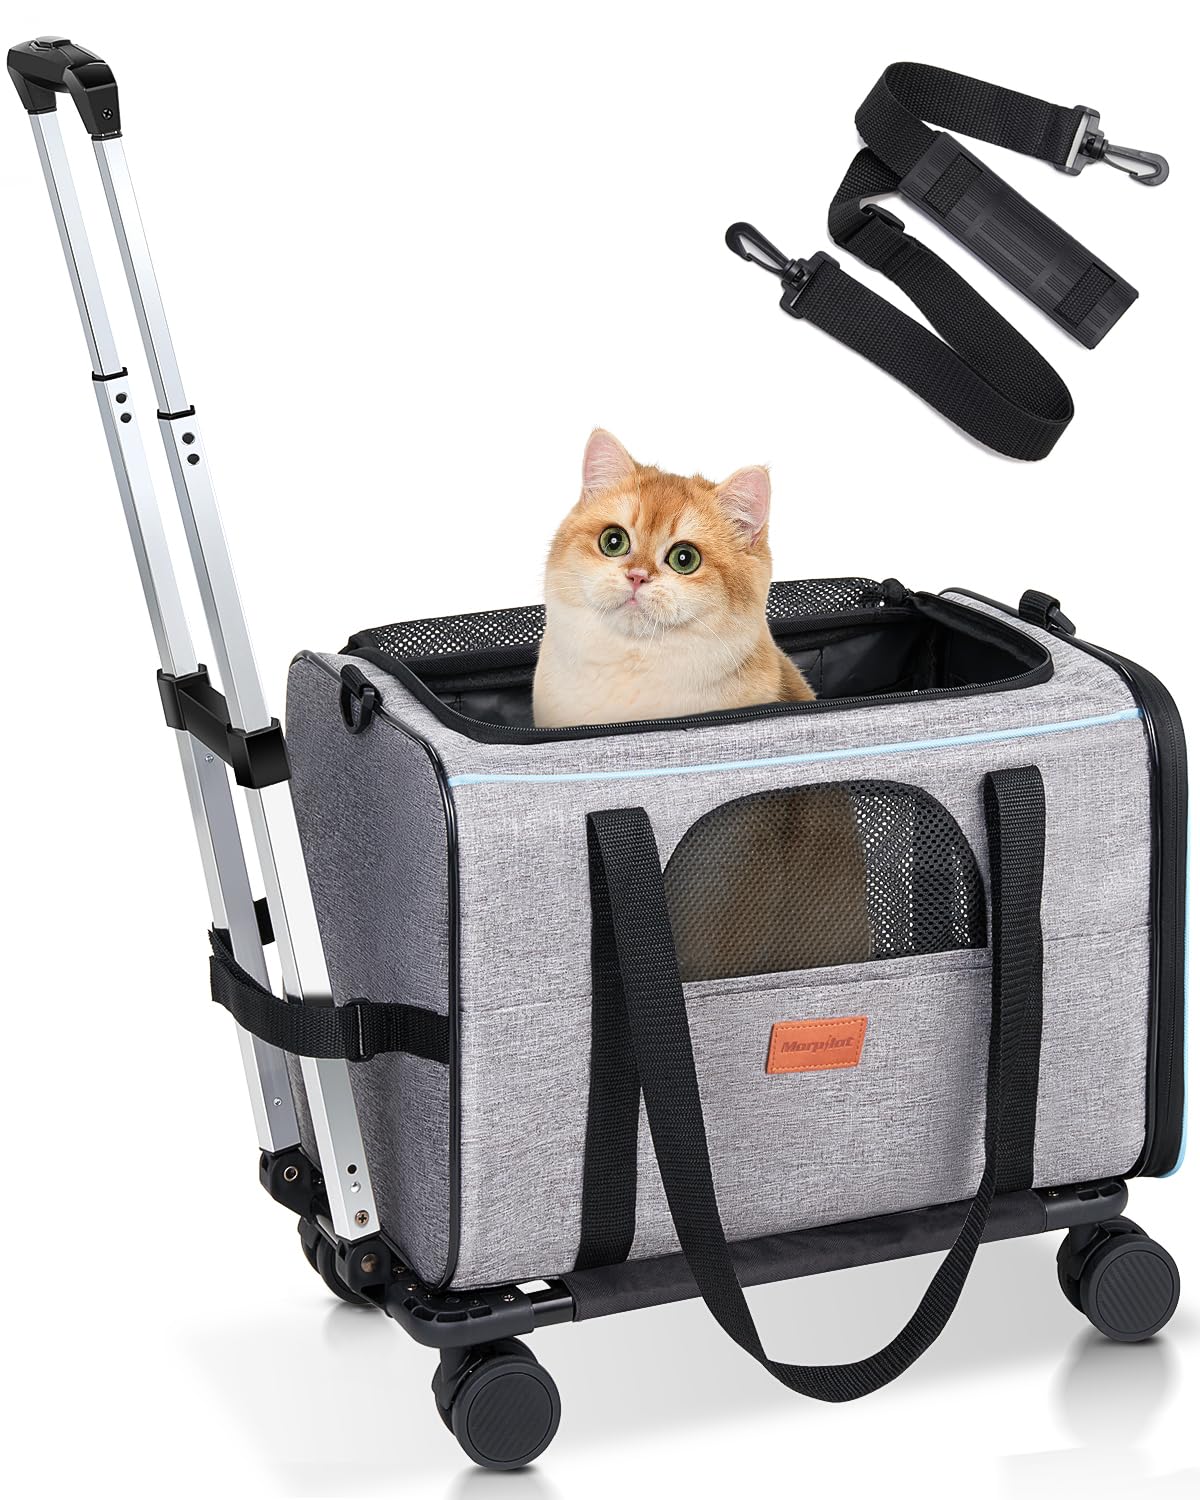 Transporttasche für Katze mit Rollen, Faltbarer Katzentransportbox Hundetragetasche Transportbox Hund mit Trolley für kleine Hunde und Katzen